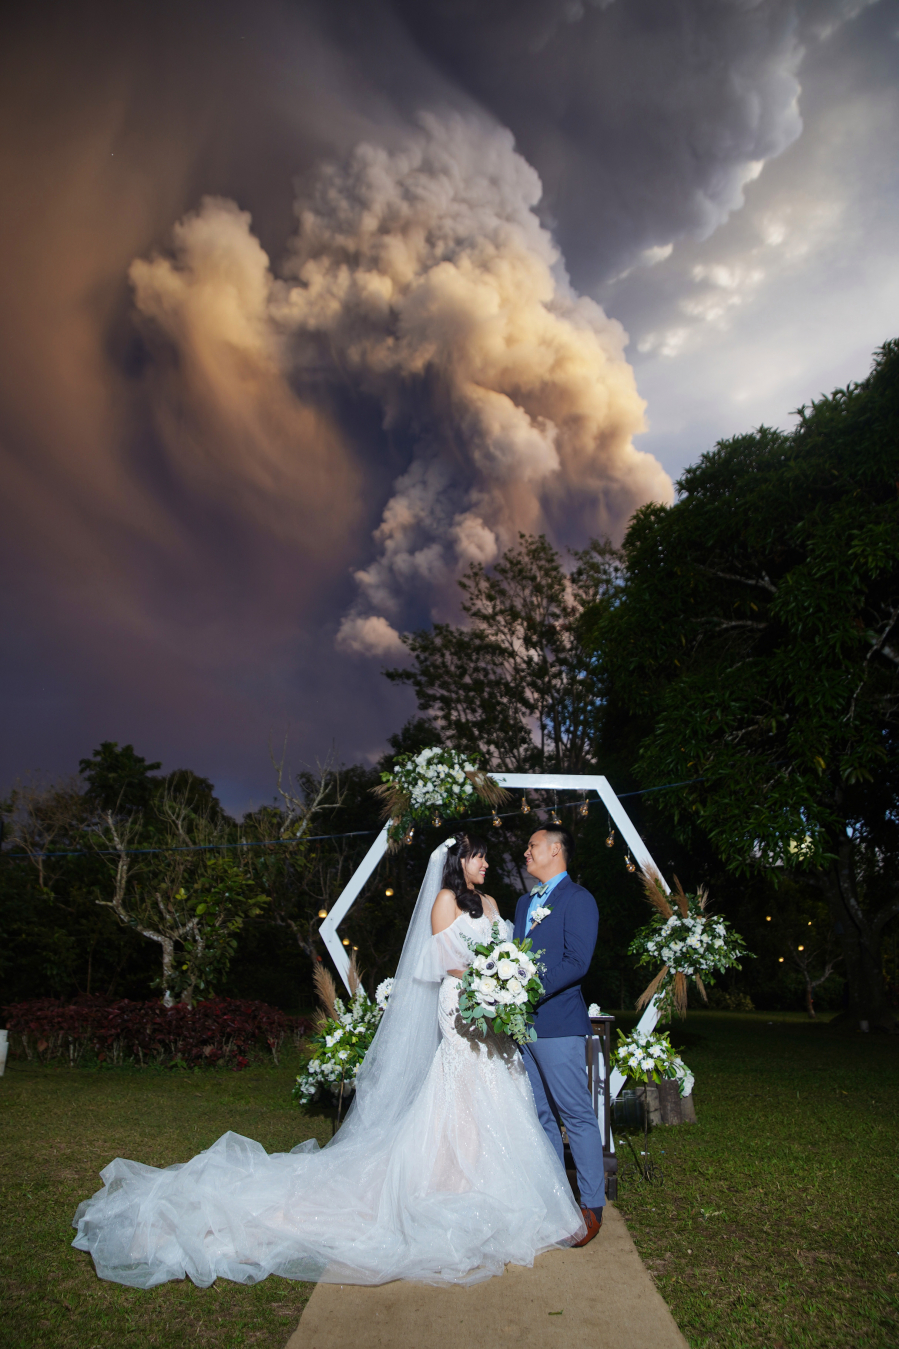 Ảnh cưới dưới cột tro núi lửa để đời của cặp đôi người Philippines